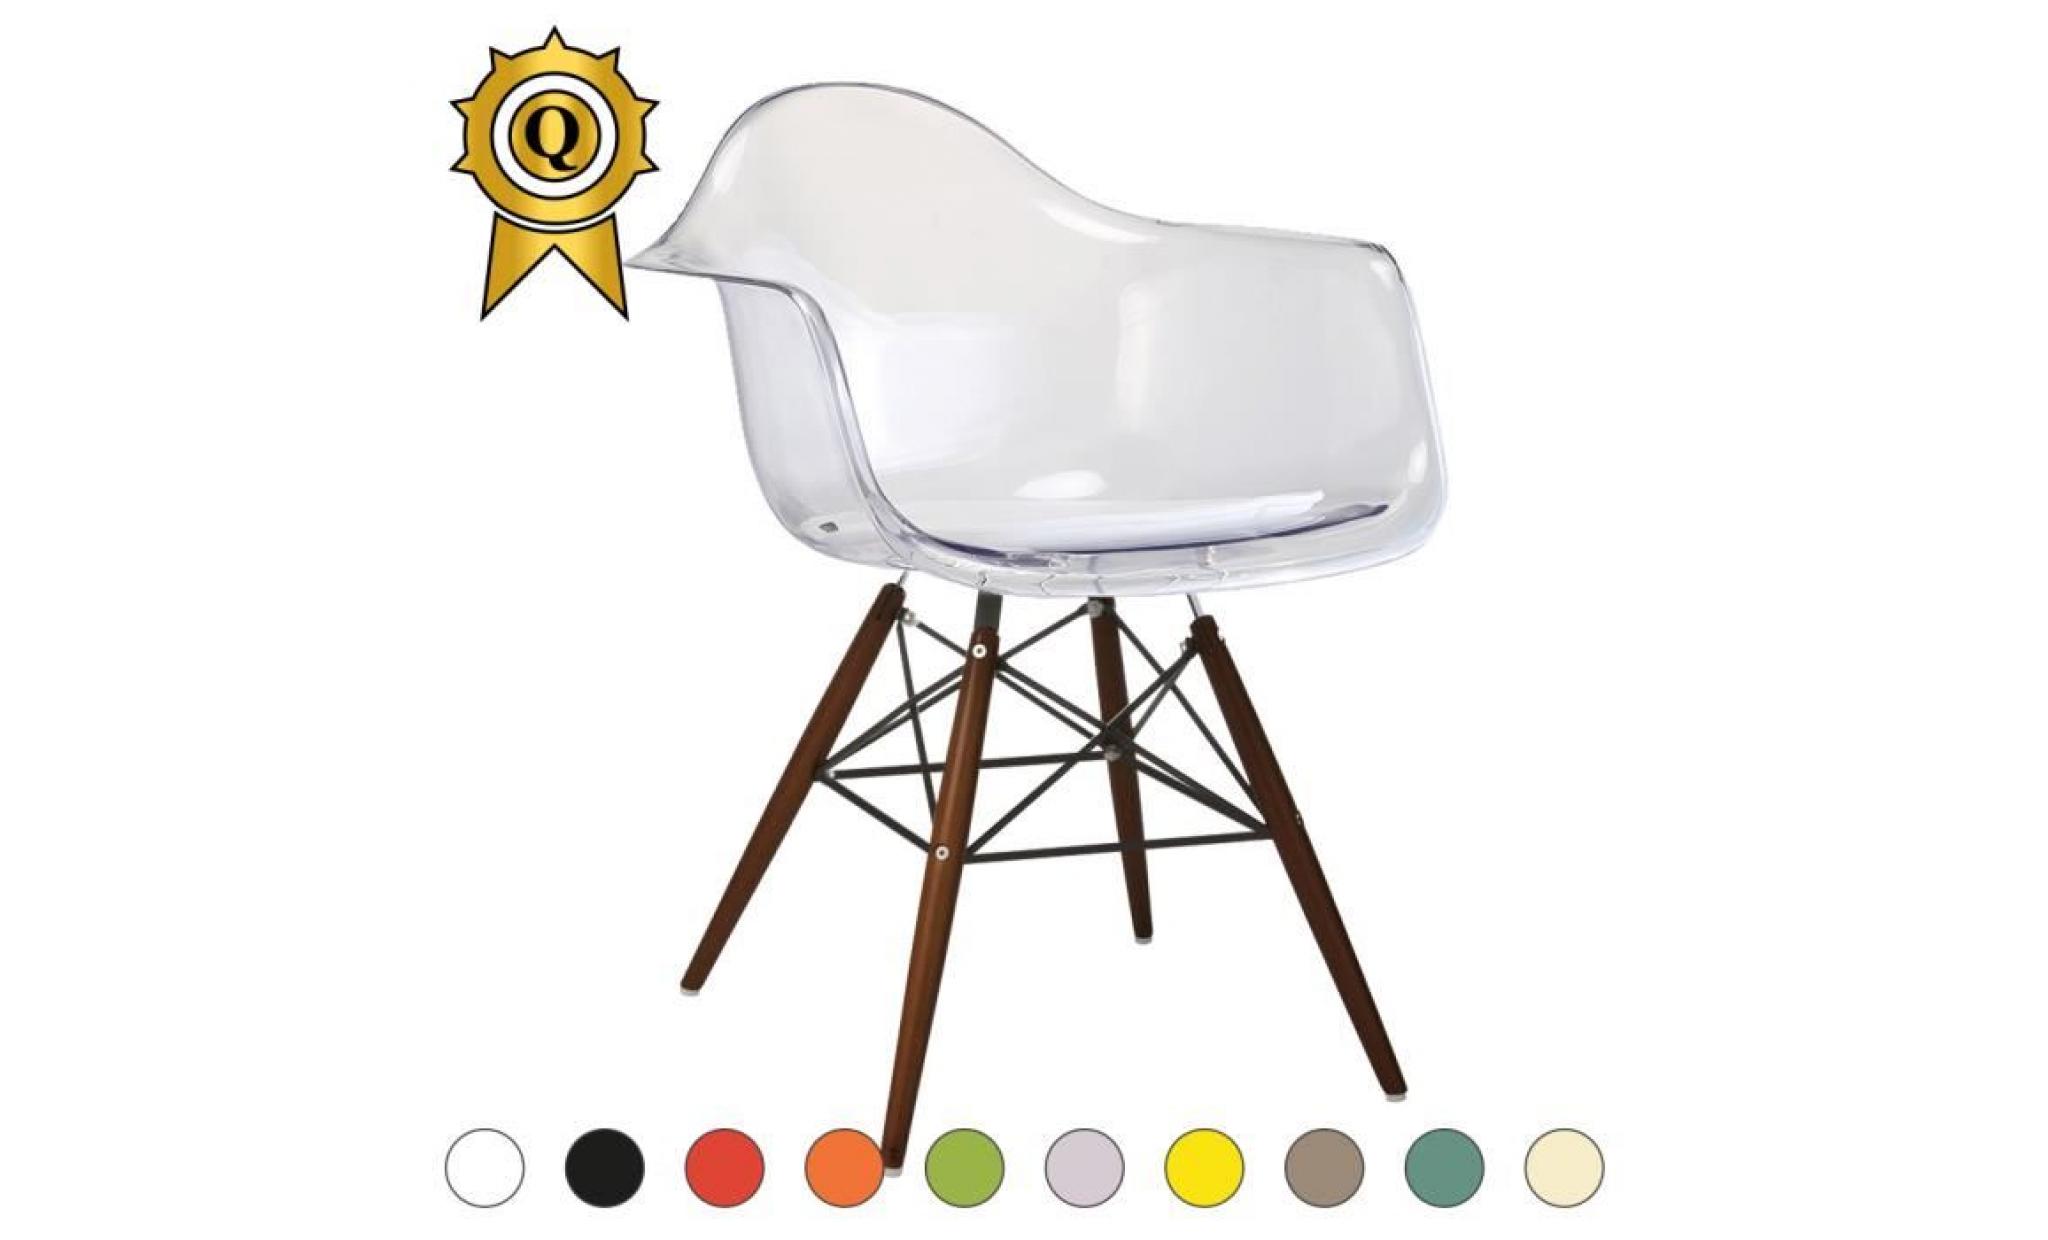 1 x fauteuil design retro style charles eames daw hauteur 48cm pieds en bois naturel vert kaki mobistyl®